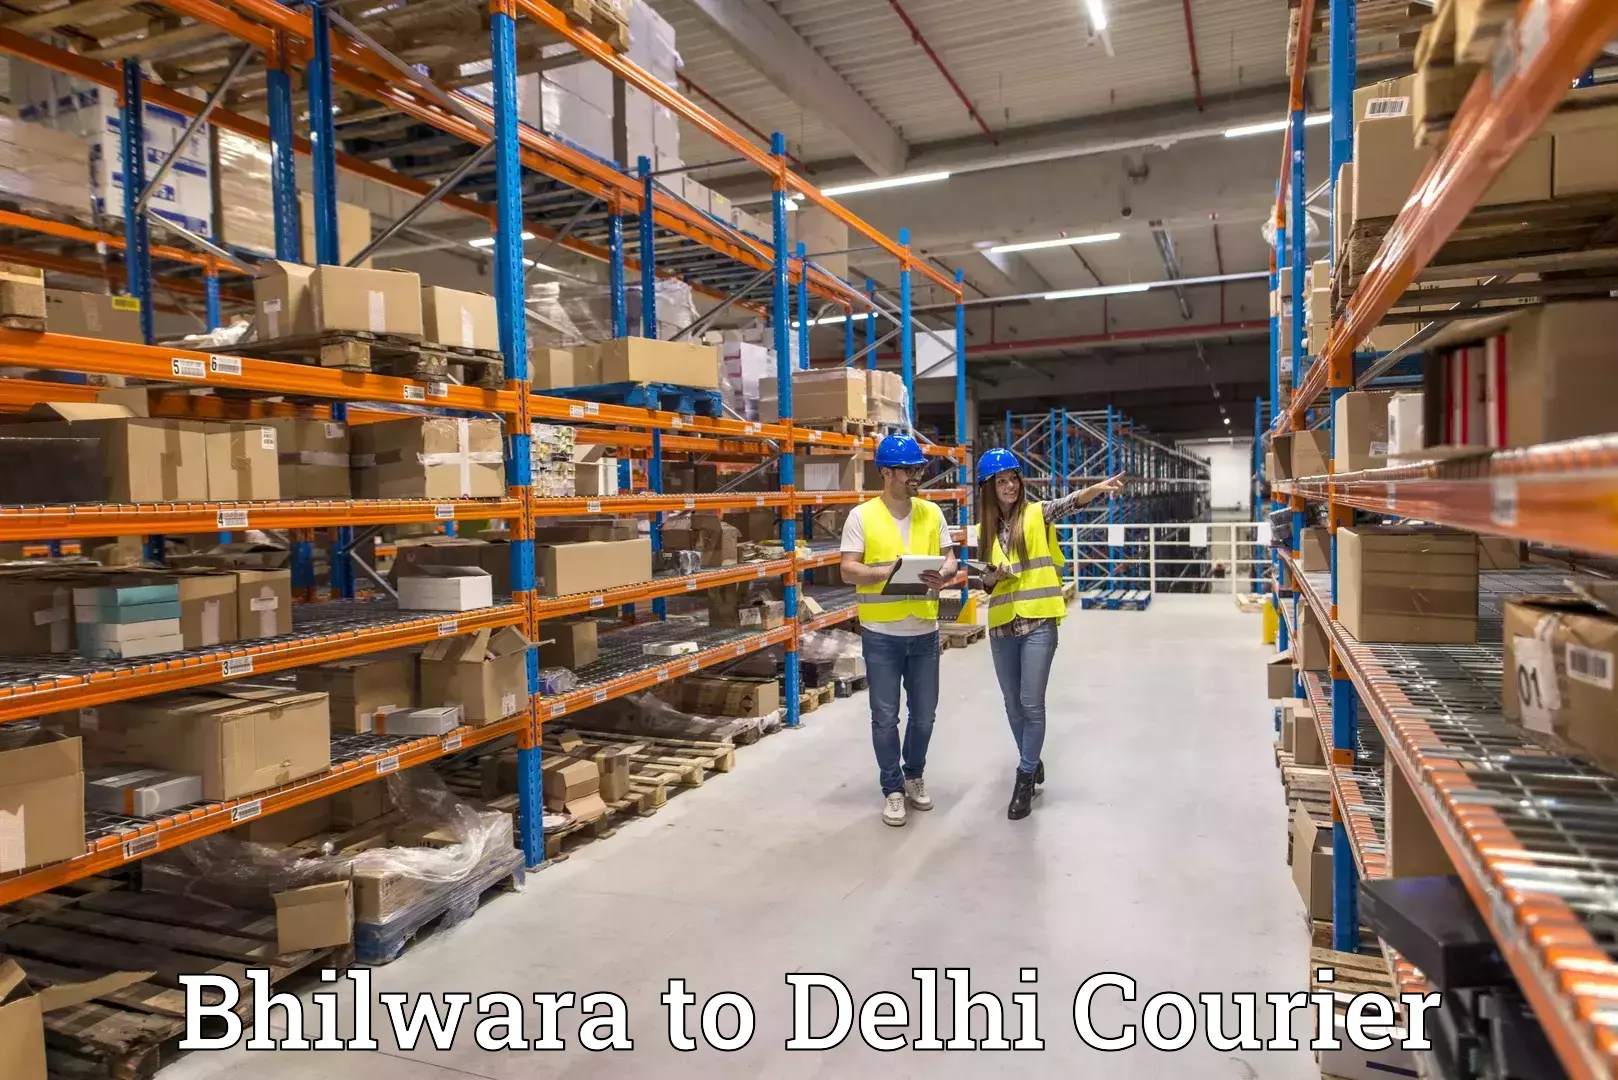 Expedited shipping methods Bhilwara to NCR